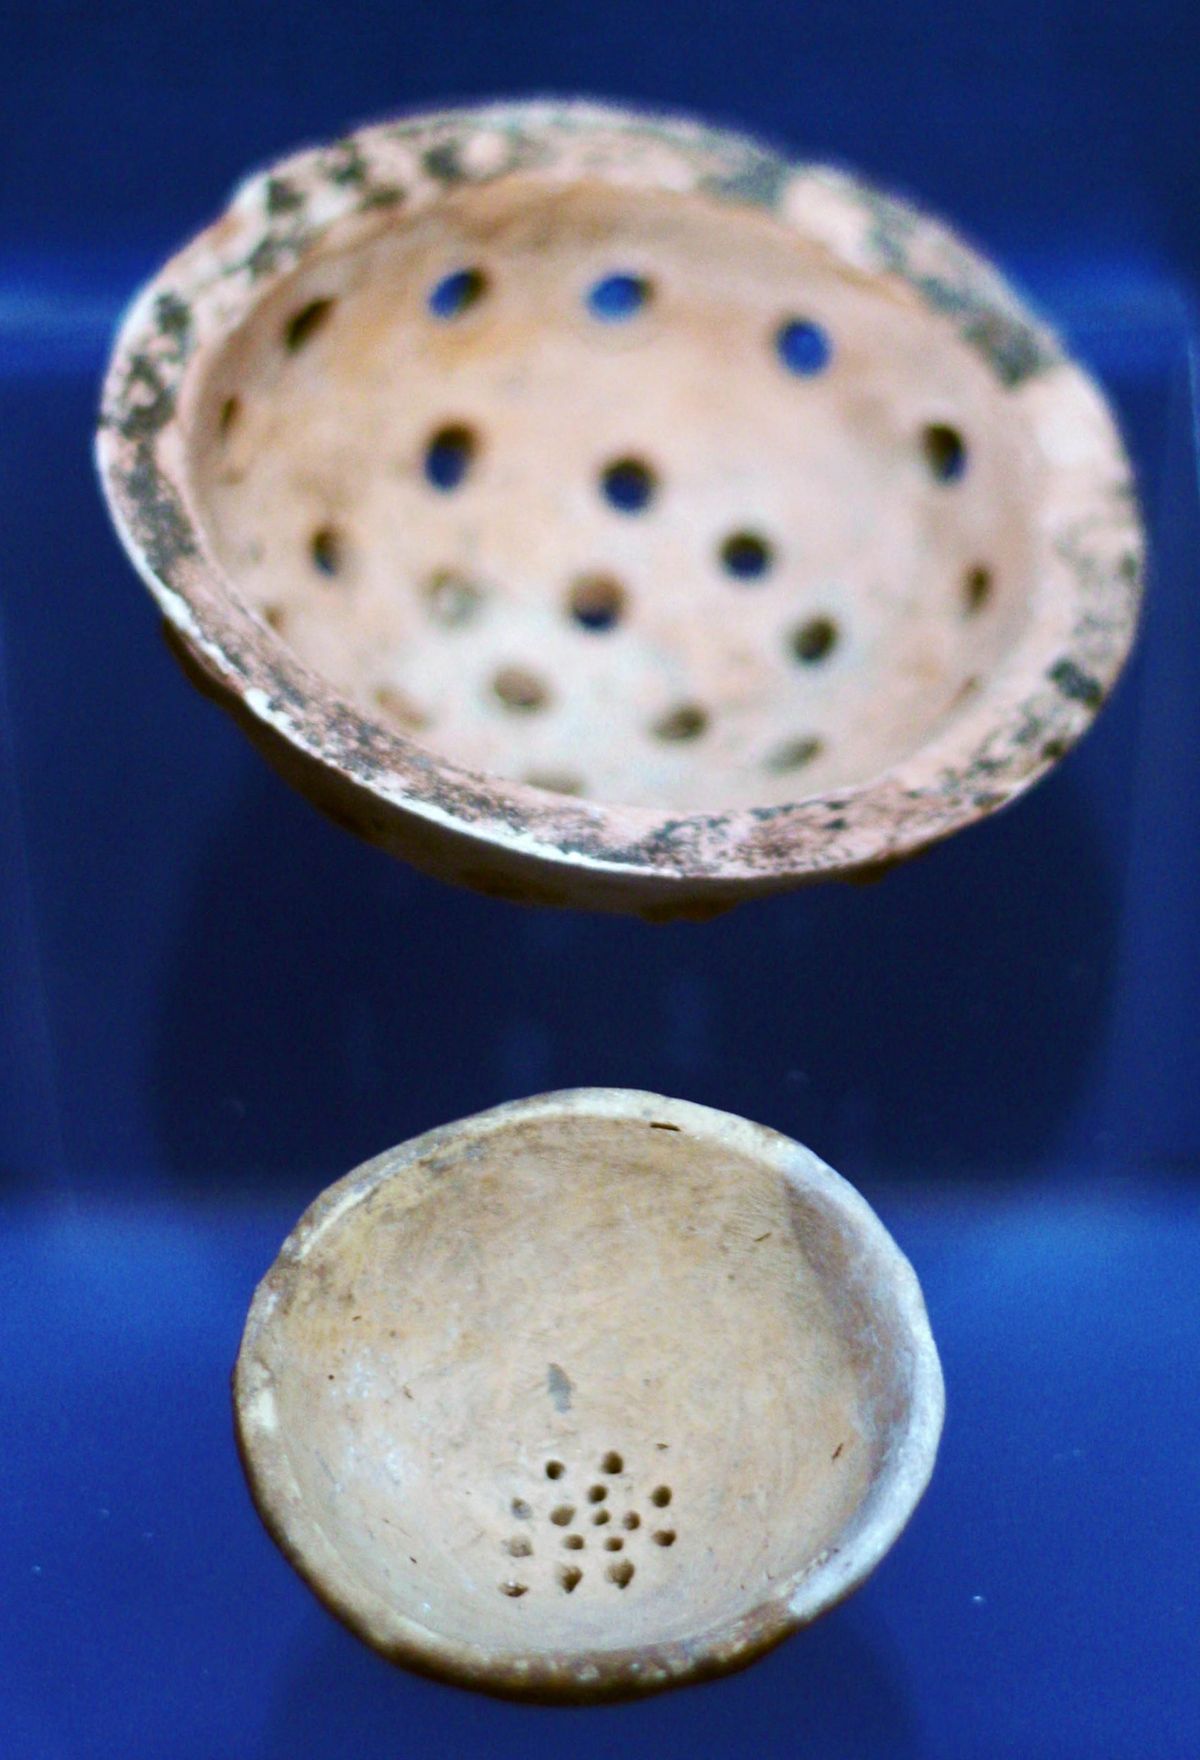 Hliněné síto nebo síto se používalo při přípravě piva ve starověkém Iráku / Alamy